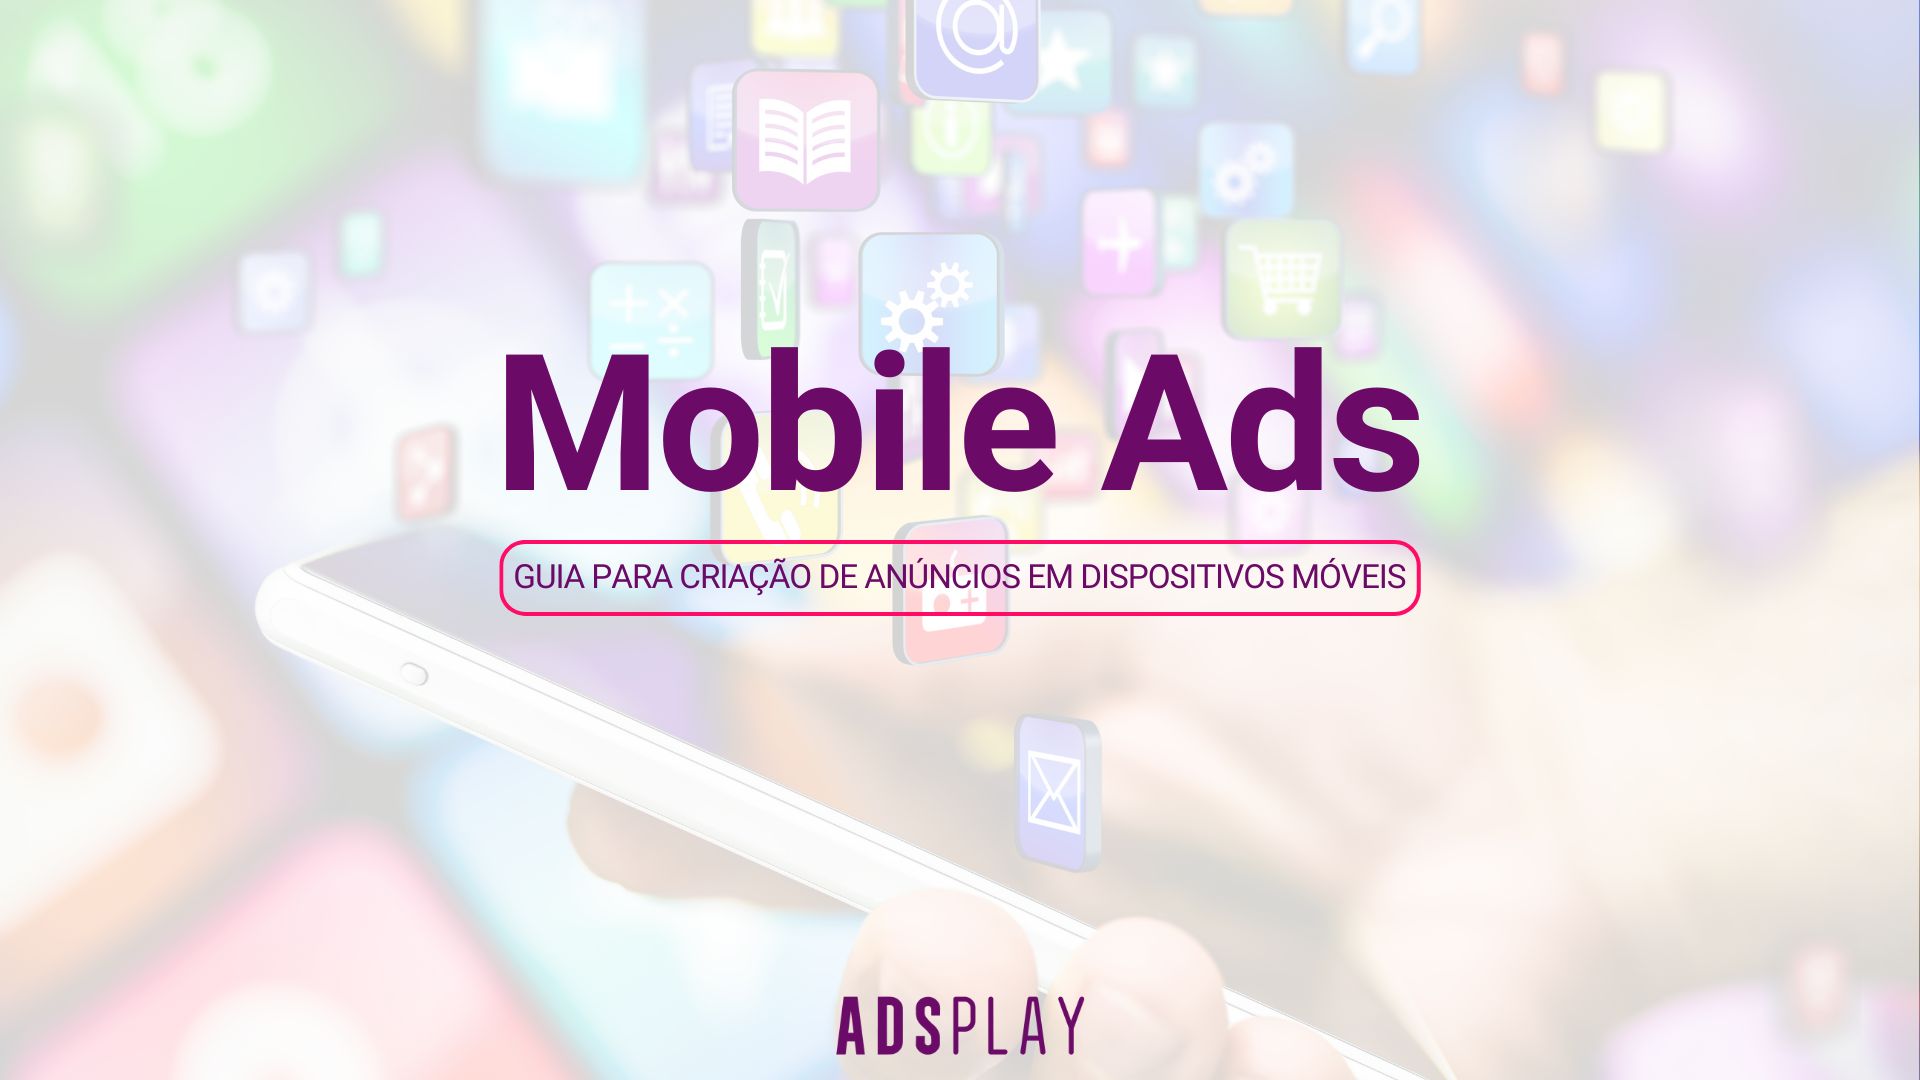 Mobile Ads: guia para criação de anúncios em dispositivos móveis